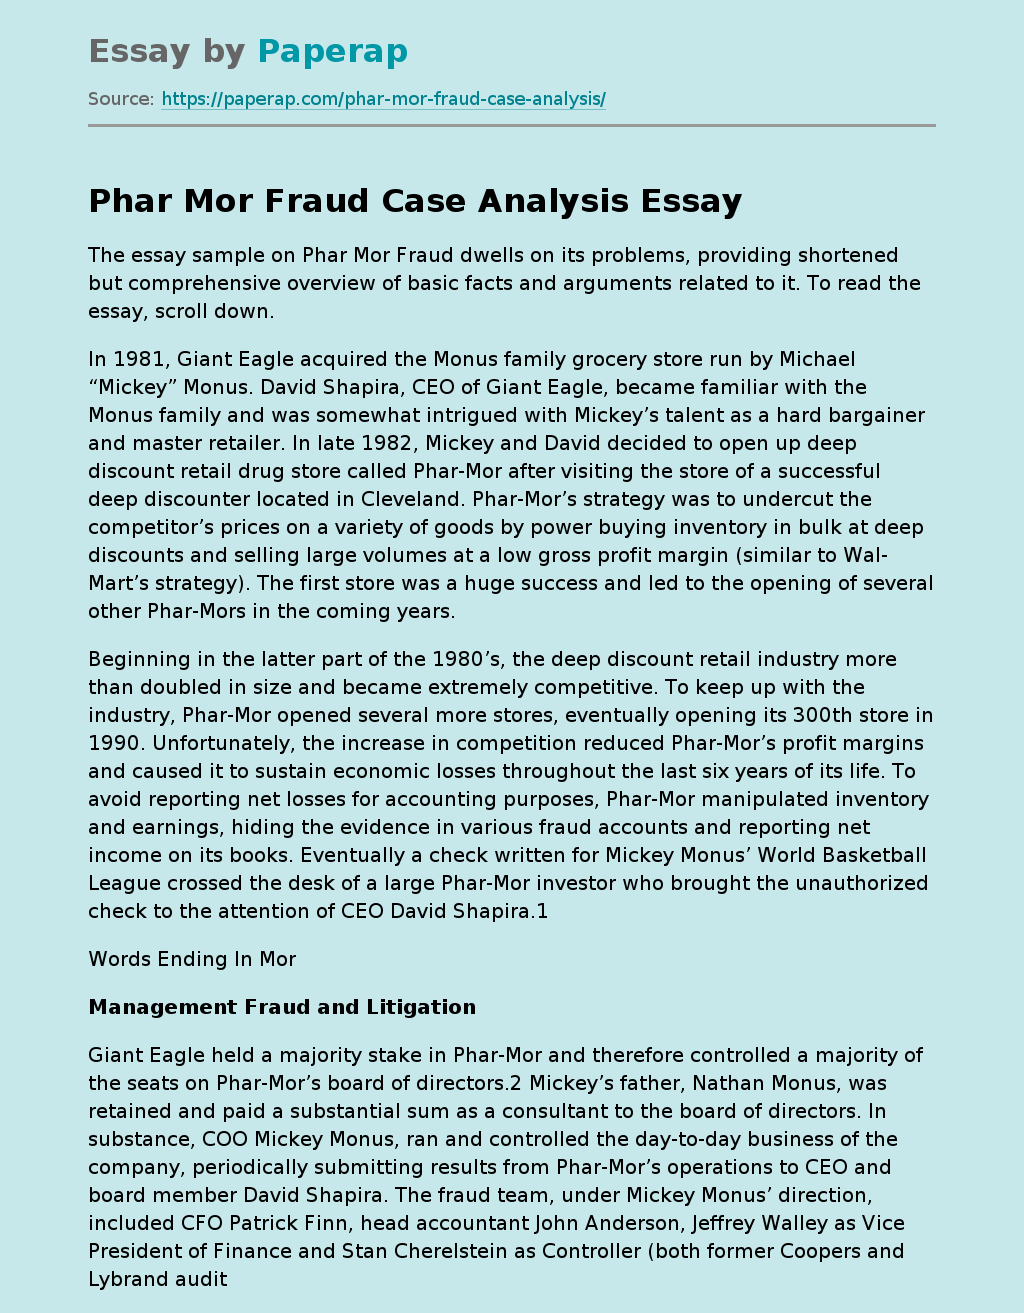 Phar Mor Fraud Case Analysis